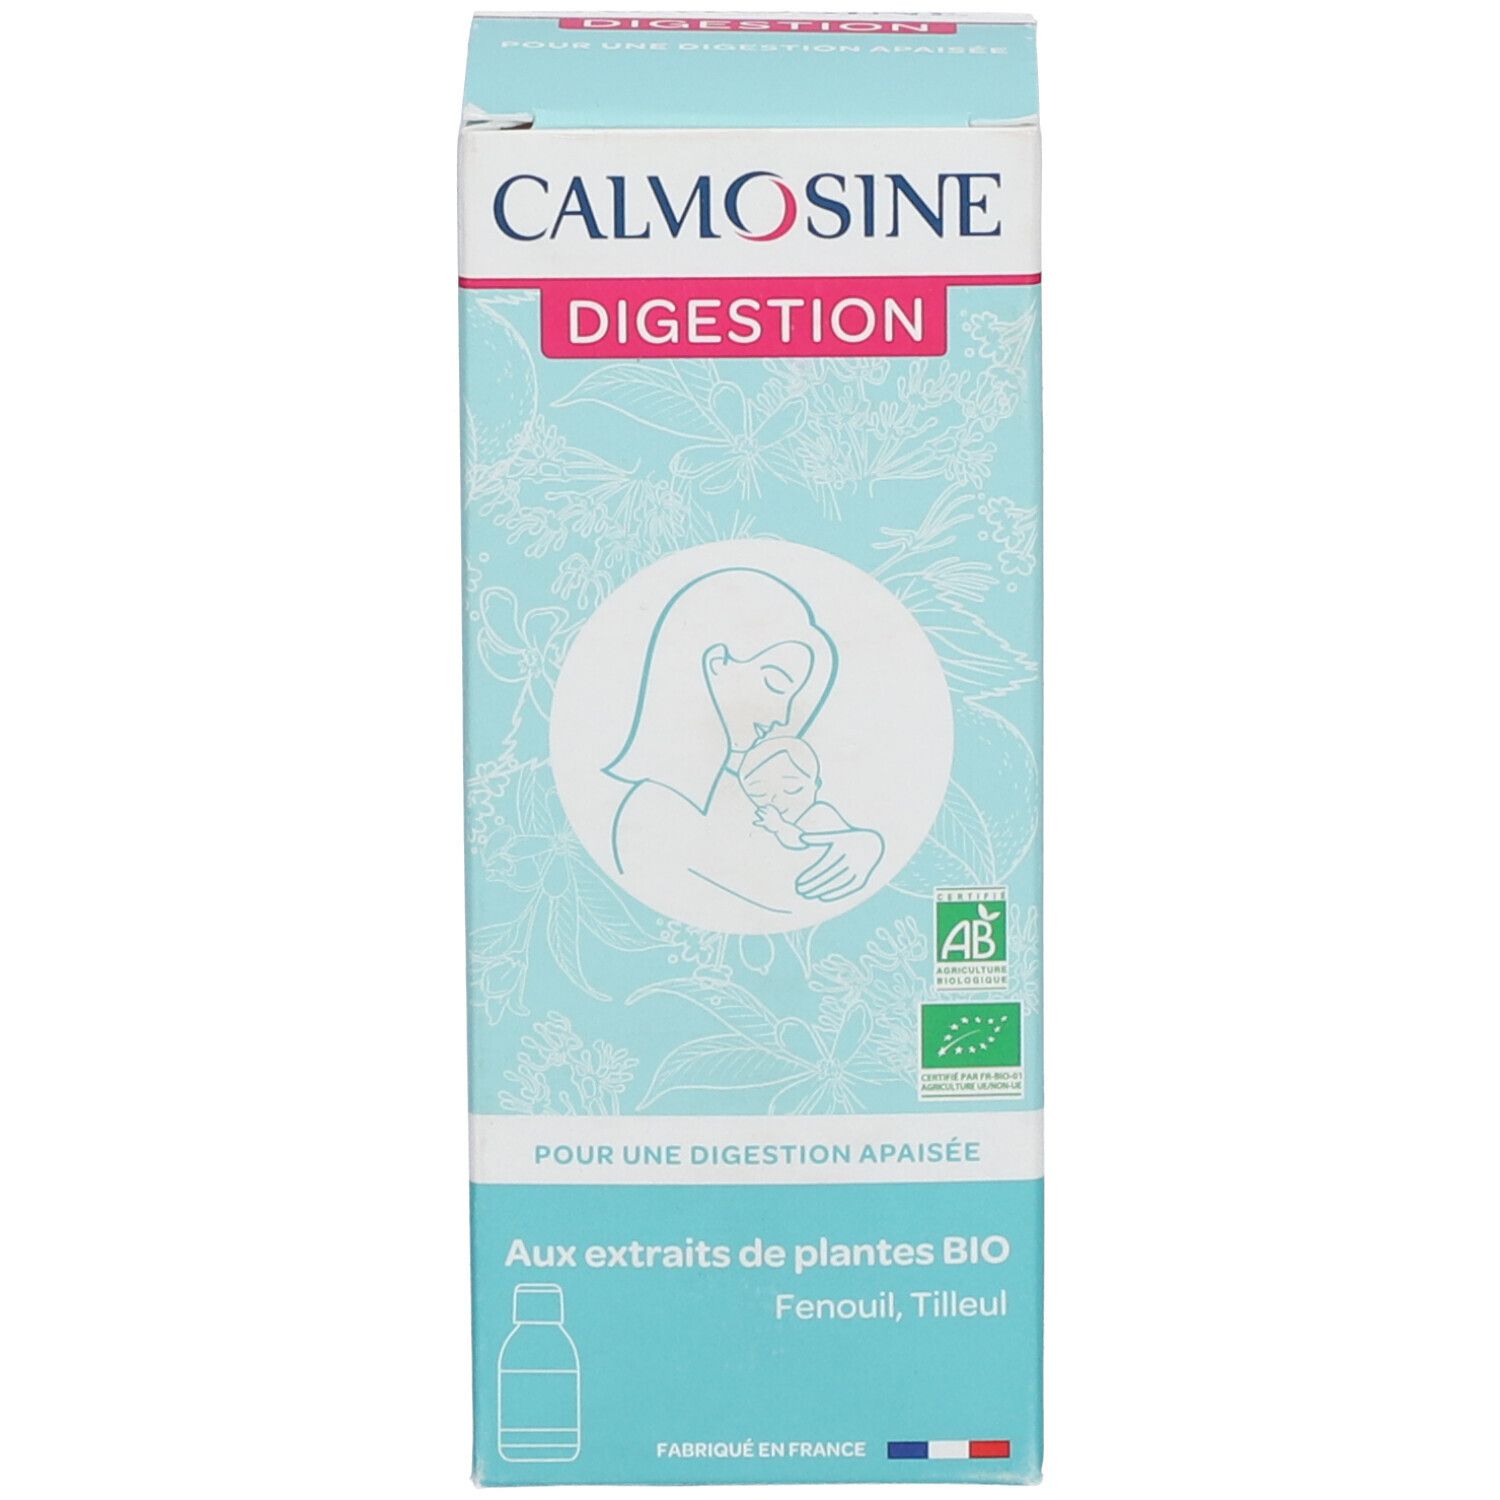 Calmosine Digestion Bio est un complément alimentaire fabriqué en Fran